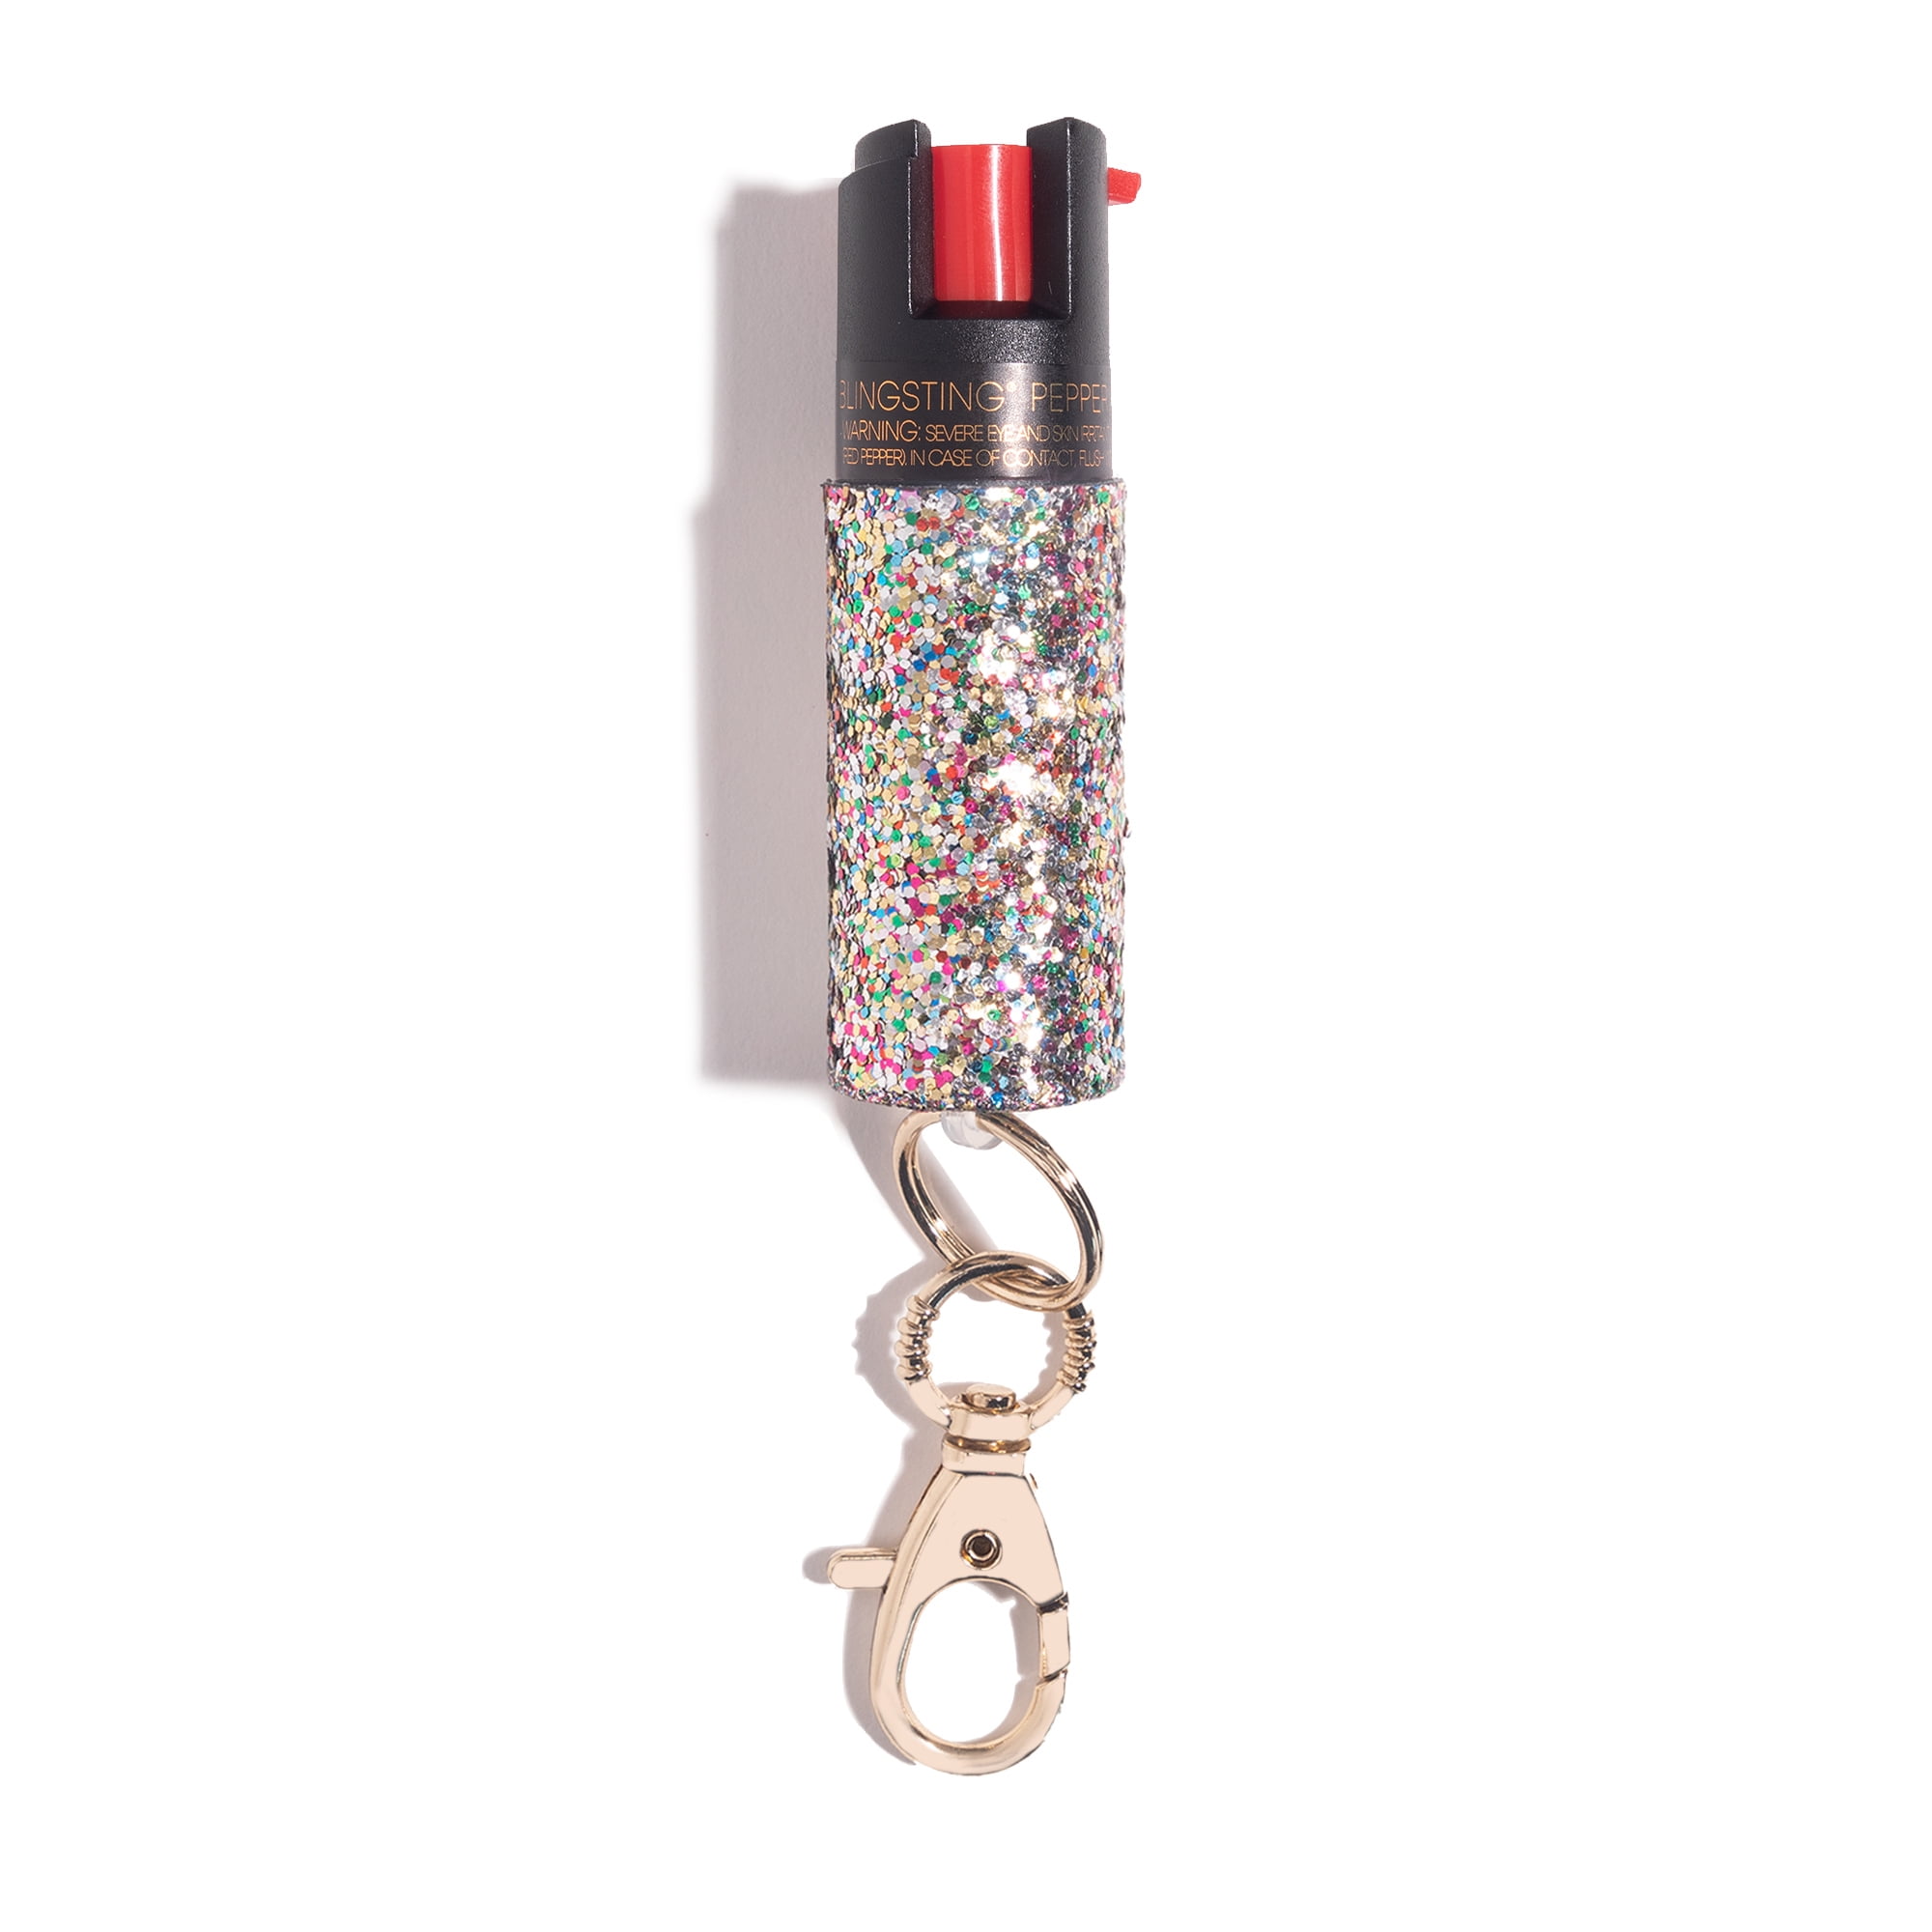 Super-Cute Pepper Spray Keychain for Self Defense, .5 oz Confetti Glitter 